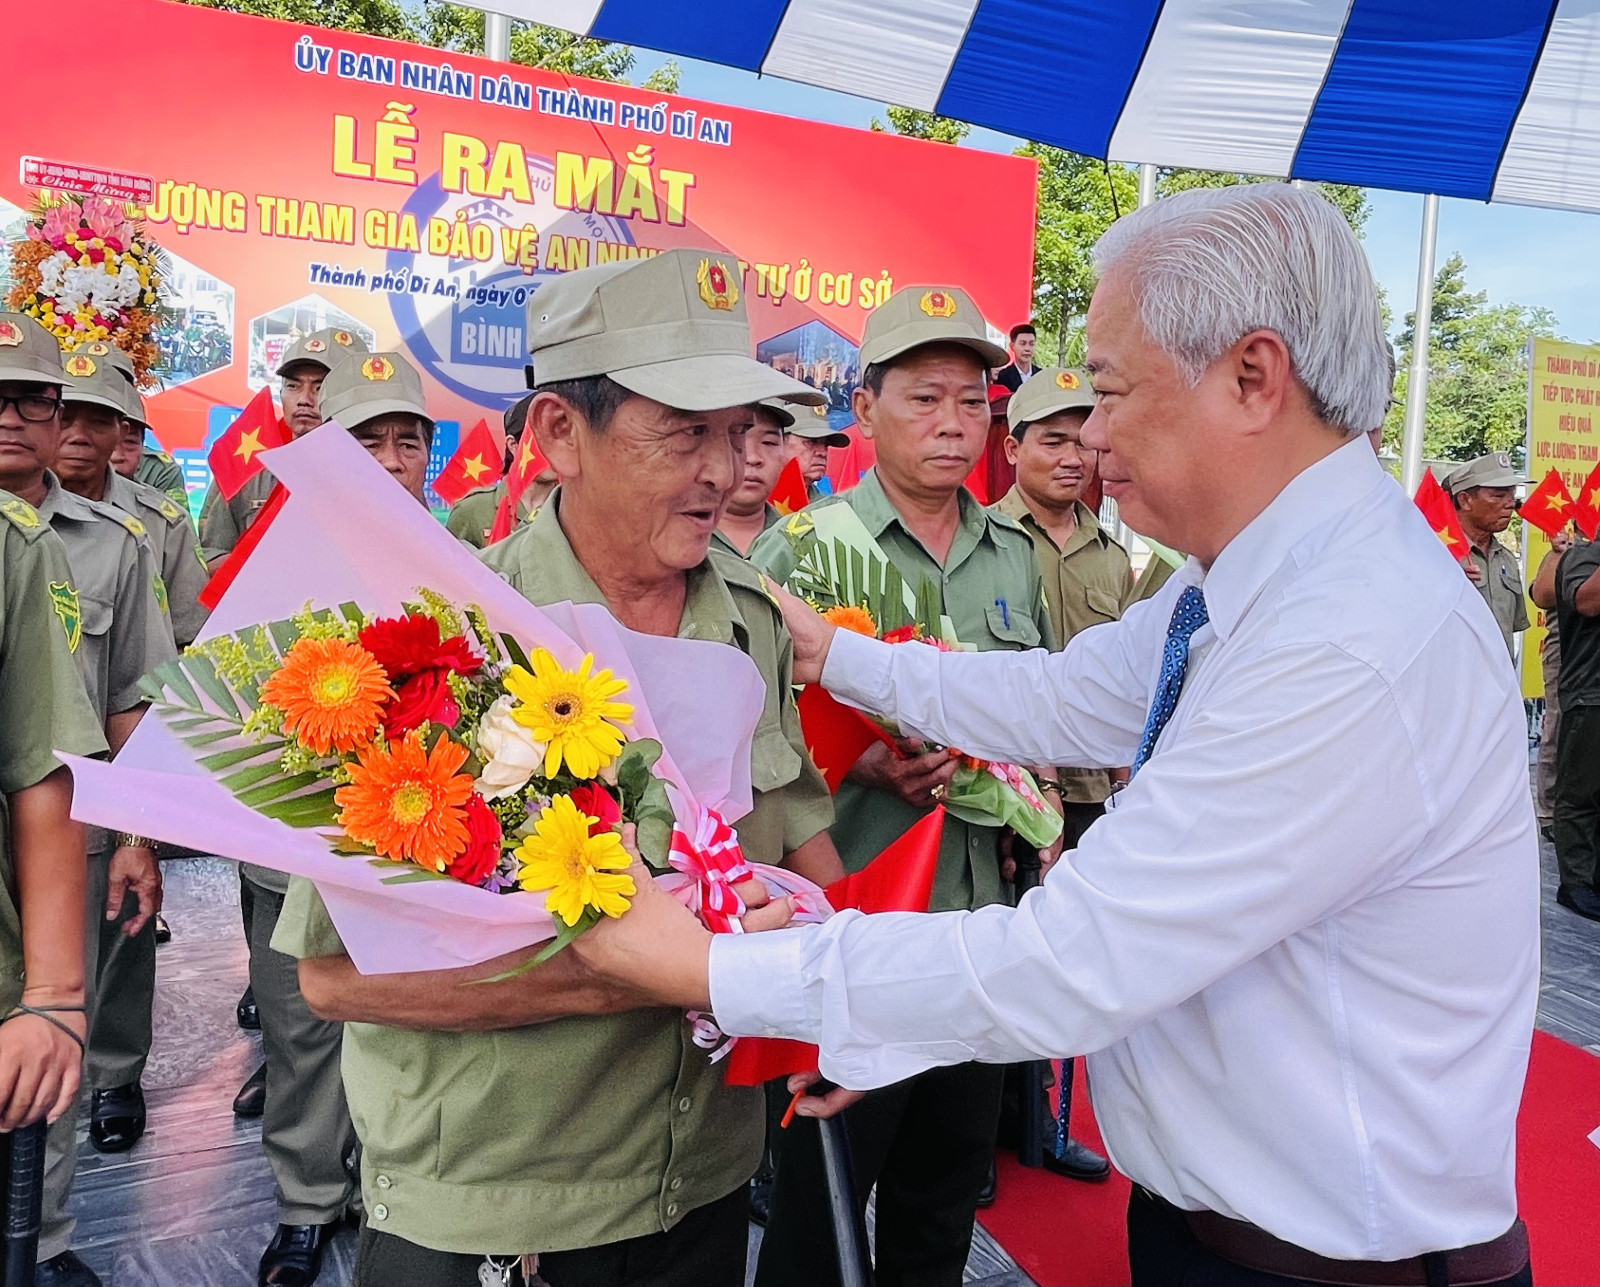 Đồng chí Hồ Quang Điệp tặng hoa cho đại diện lực lượng tham gia bảo vệ ANTT ở cơ sở TP. Dĩ An.